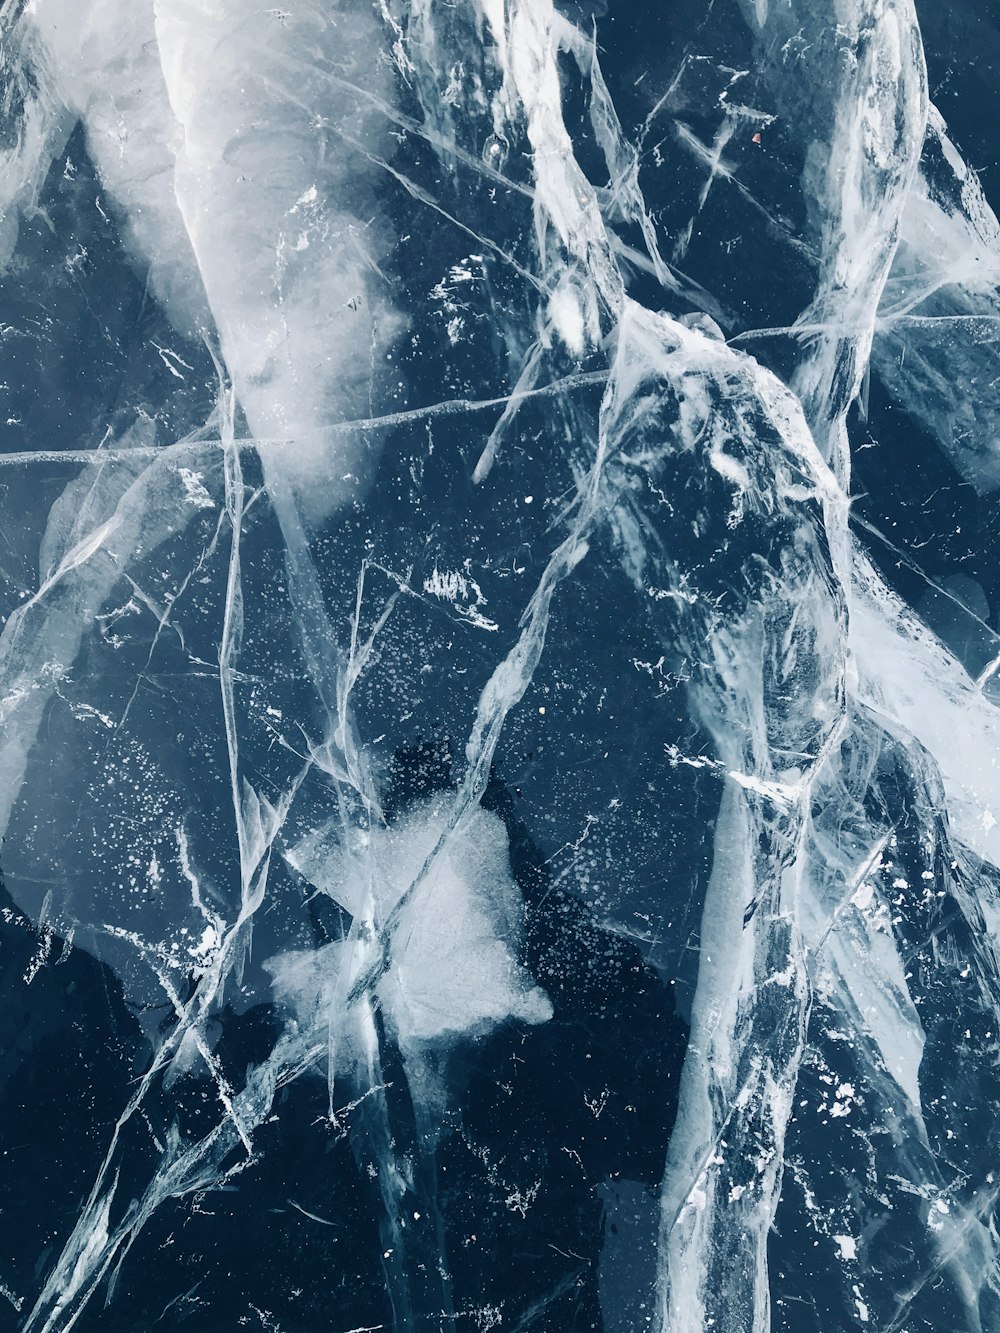 rachado na superfície do gelo